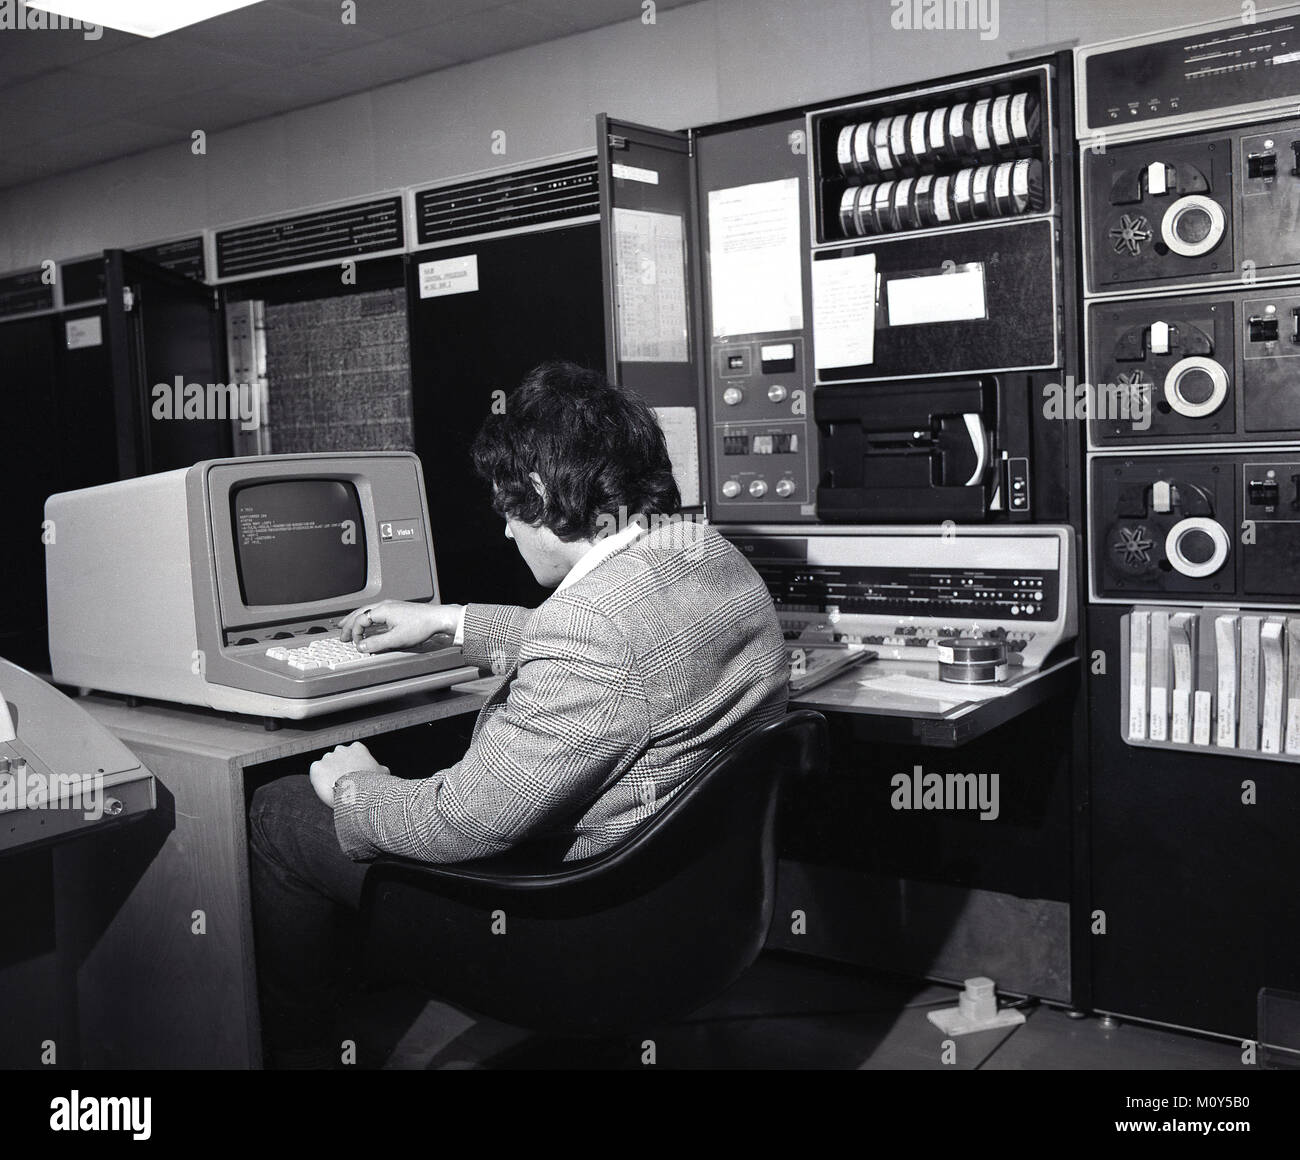 70, tableau historique d'un homme dans une salle de traitement des données avec des banques de matériel électronique à côté de lui, assis à une petite station de travail à l'aide d'un ordinateur avec écran, England, UK. Banque D'Images